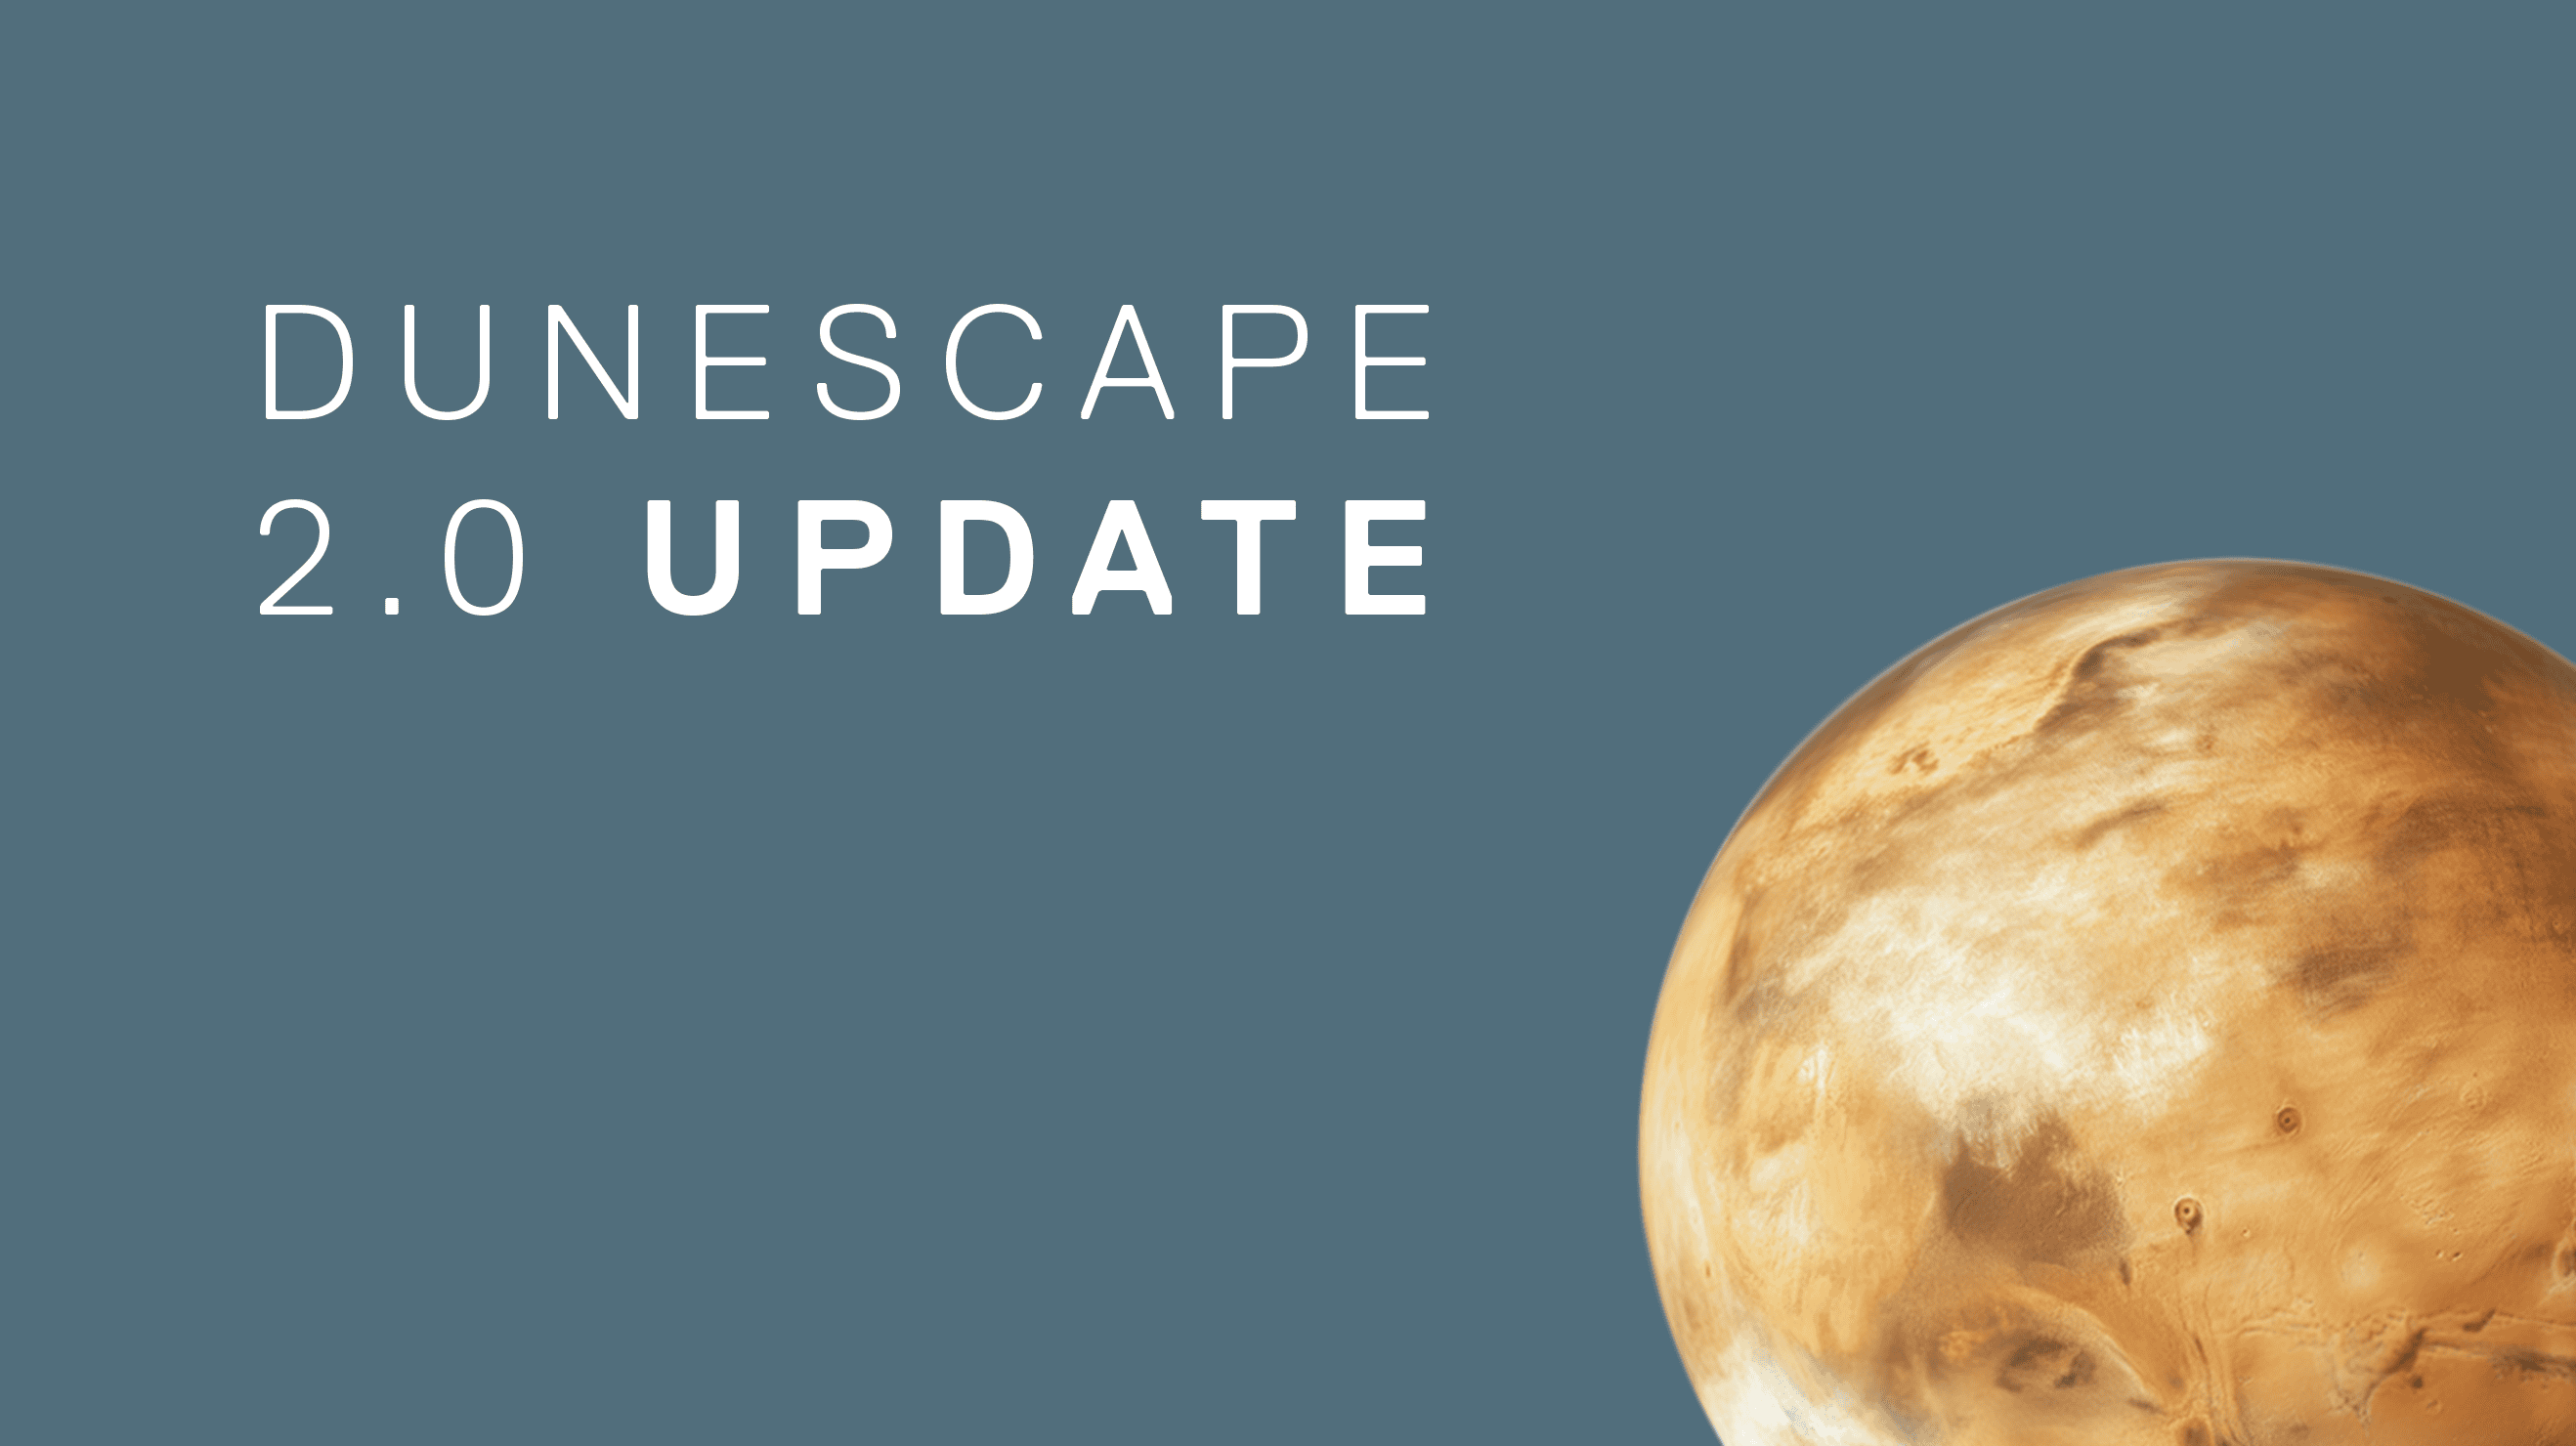 Dunescape UDS 2.0